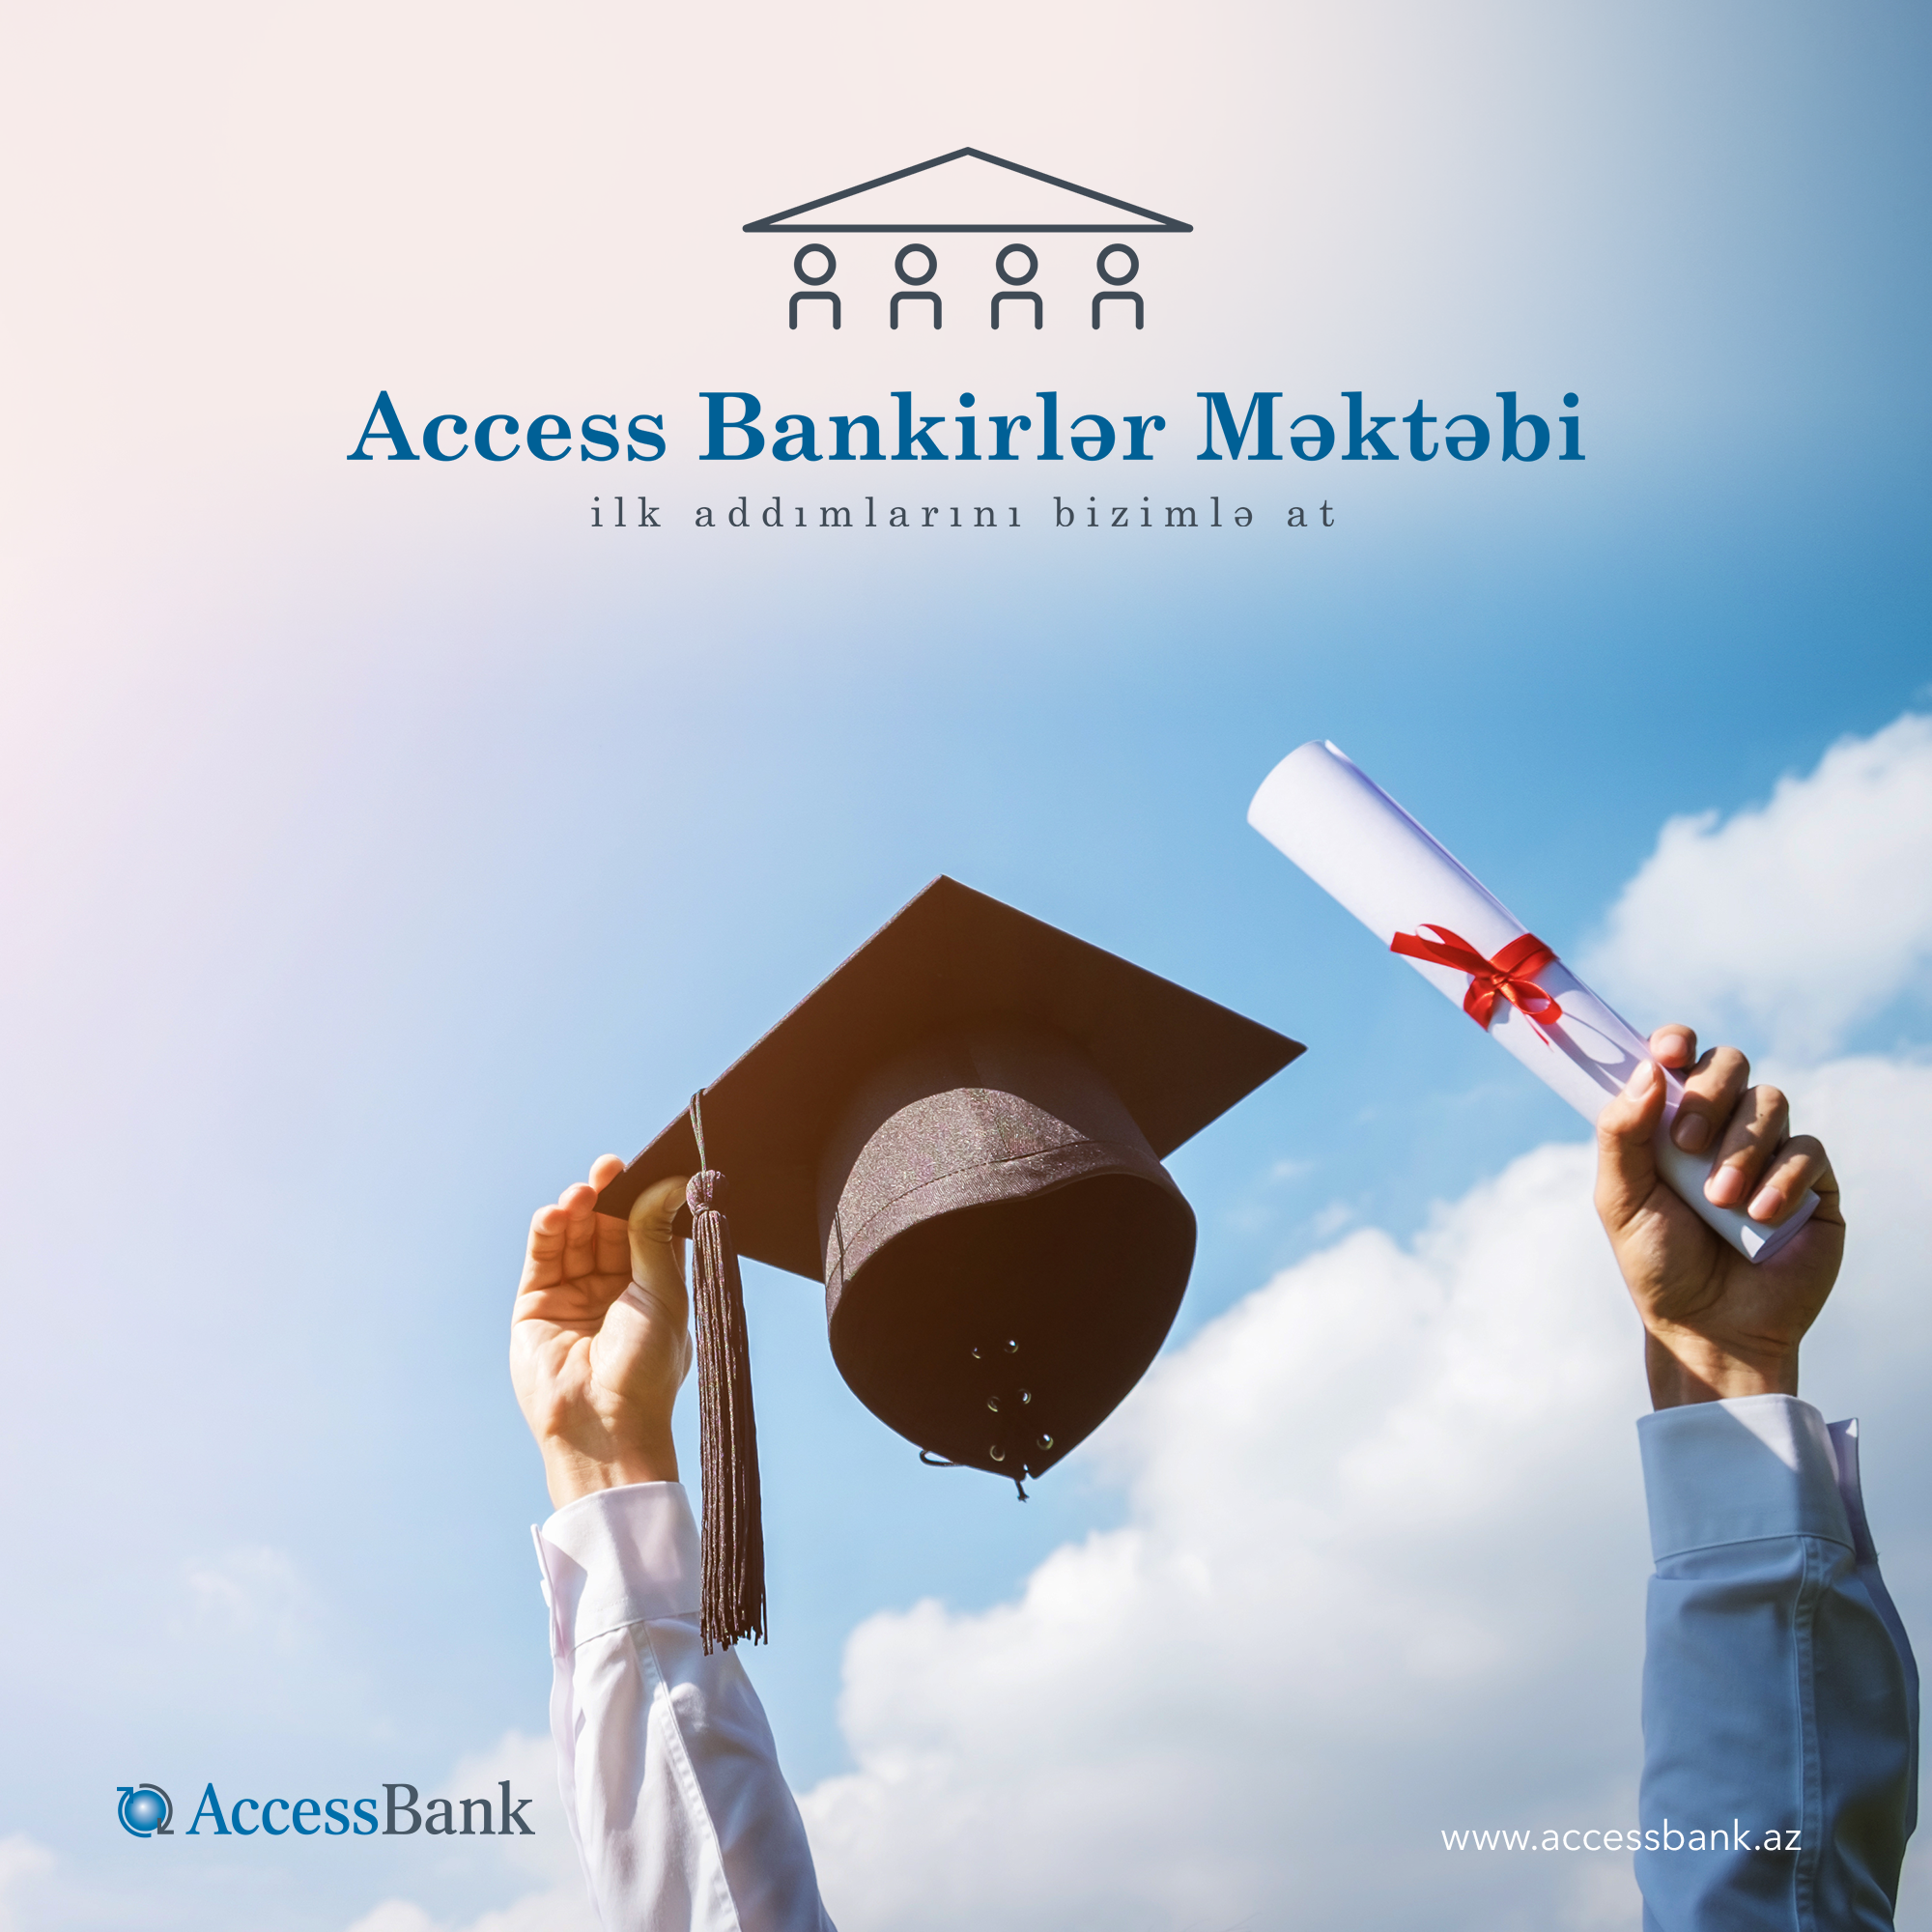 AccessBank-da karyera qurmaq şansını qaçırma!